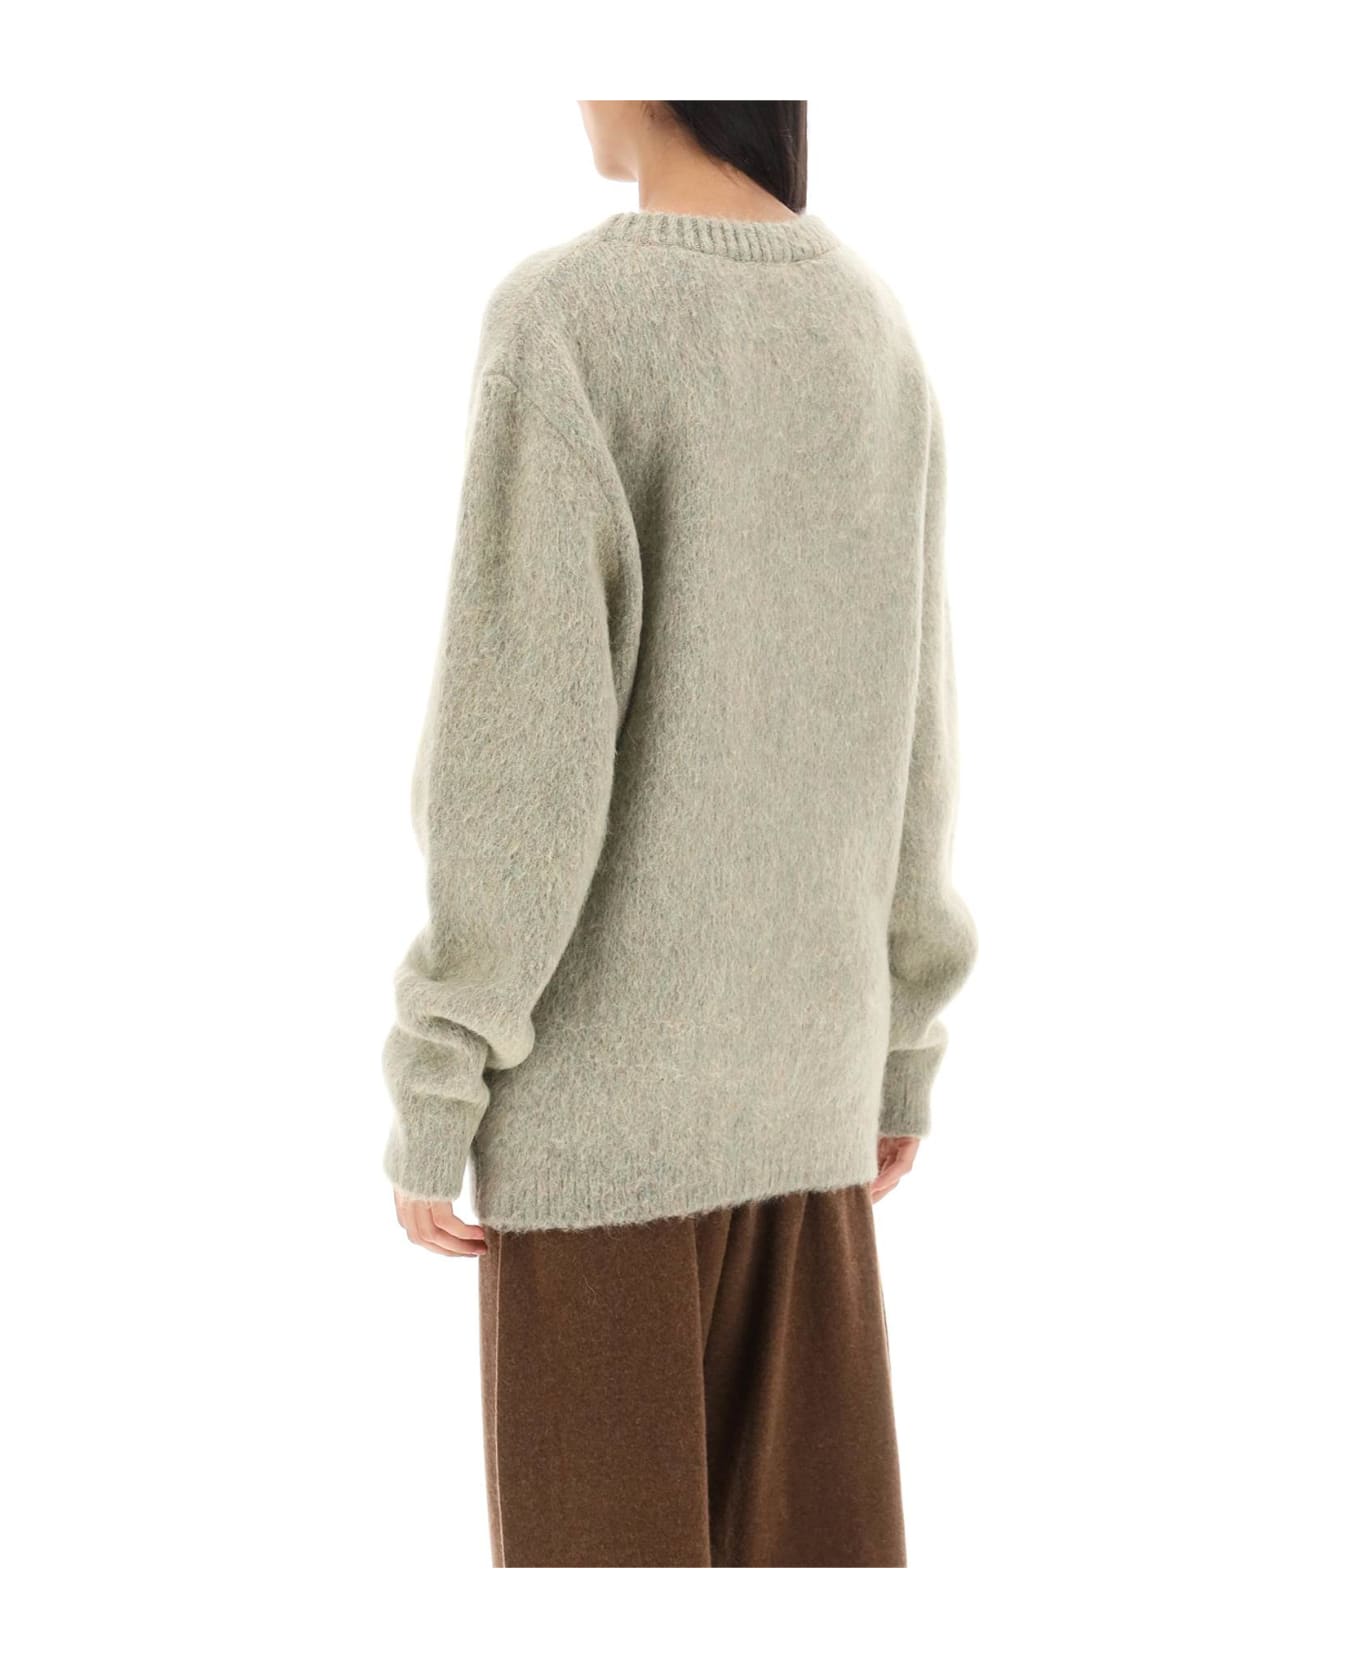 Lemaire Sweater In Melange-effect Brushed Yarn - Beige ニットウェア